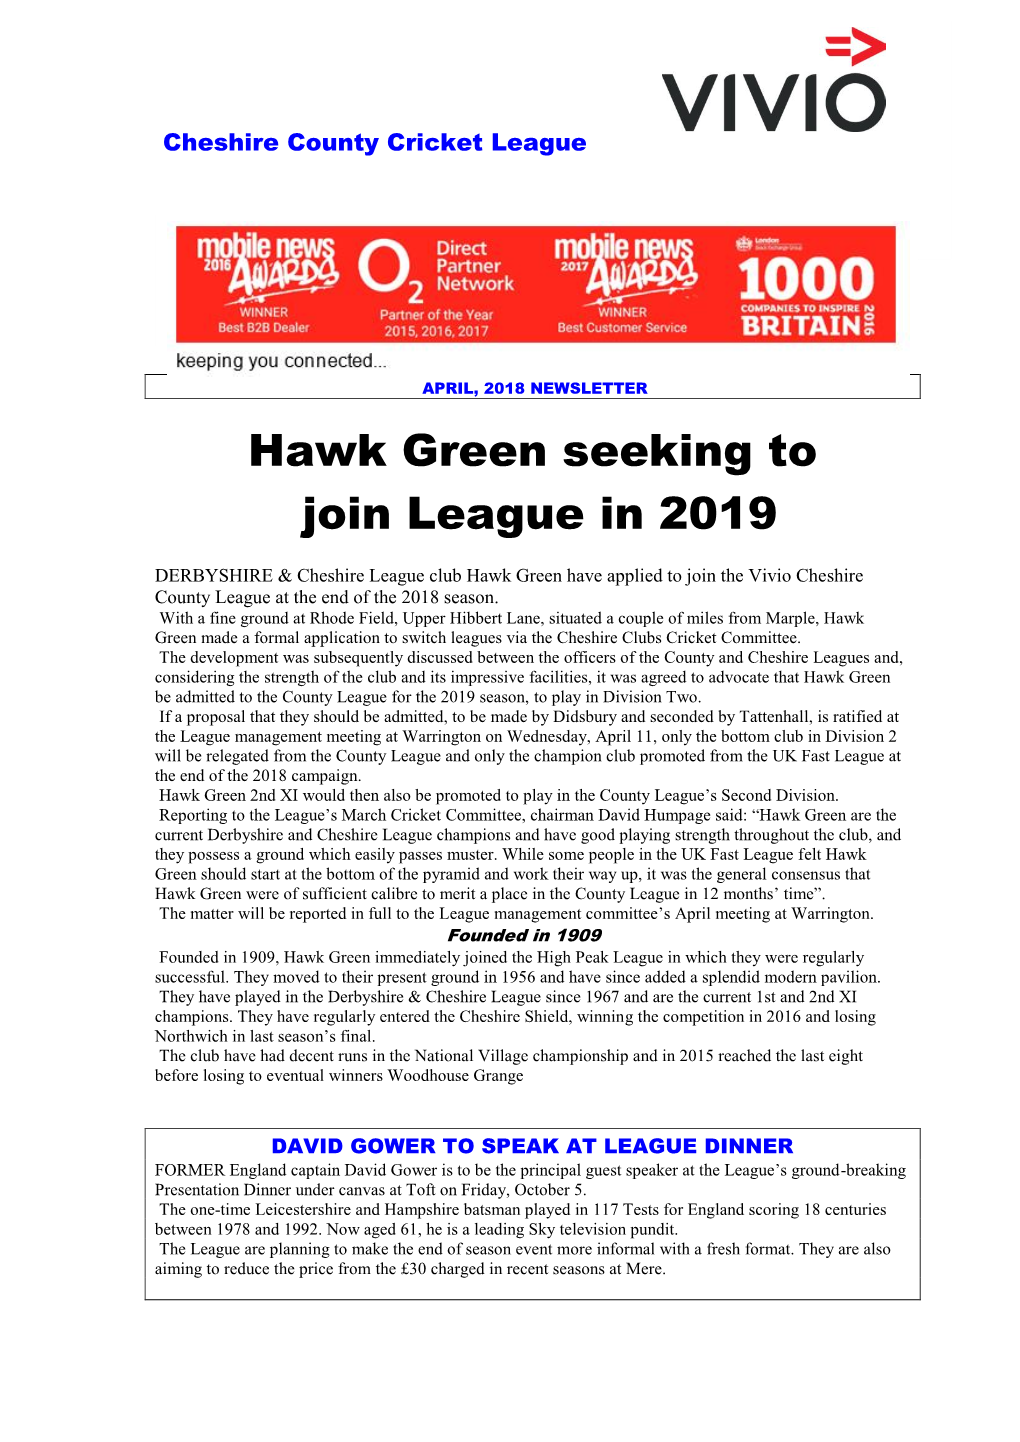 Hawk Green Seeking to Join League in 2019